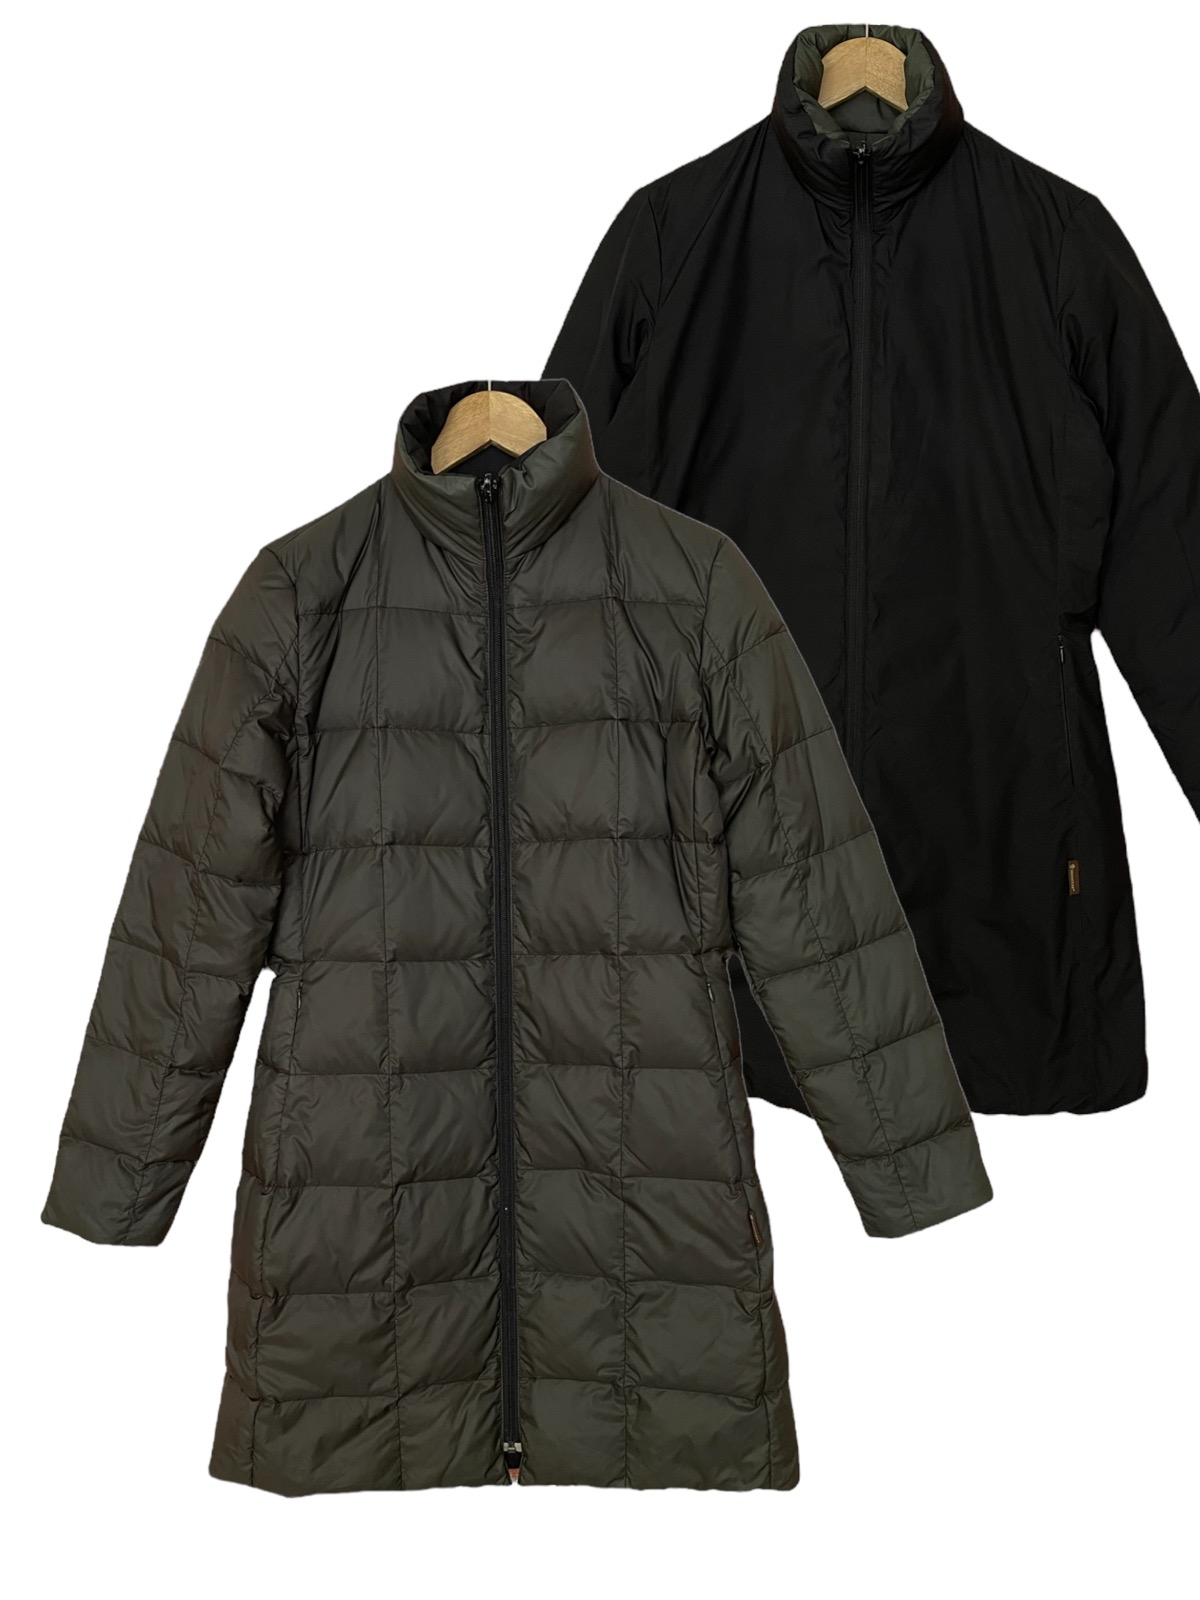 Moncler long puffer jacket reversible down jacket - 1